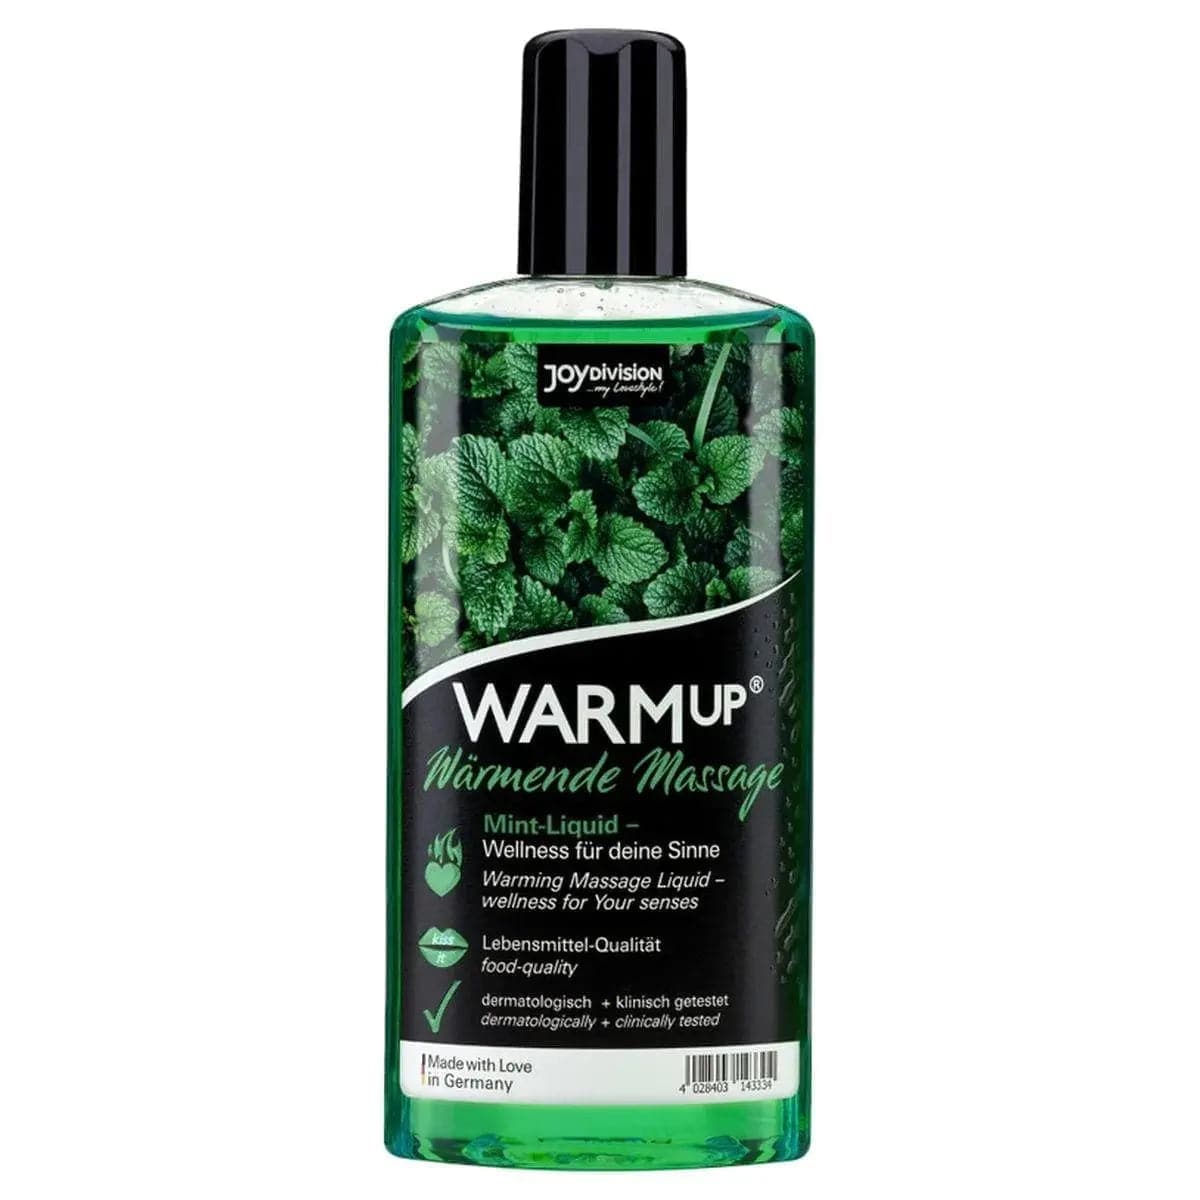 WARMup - Óleo Massagem Comestível Menta 150ml - Aquecimento e Aroma de Fruta  JoyDivision   